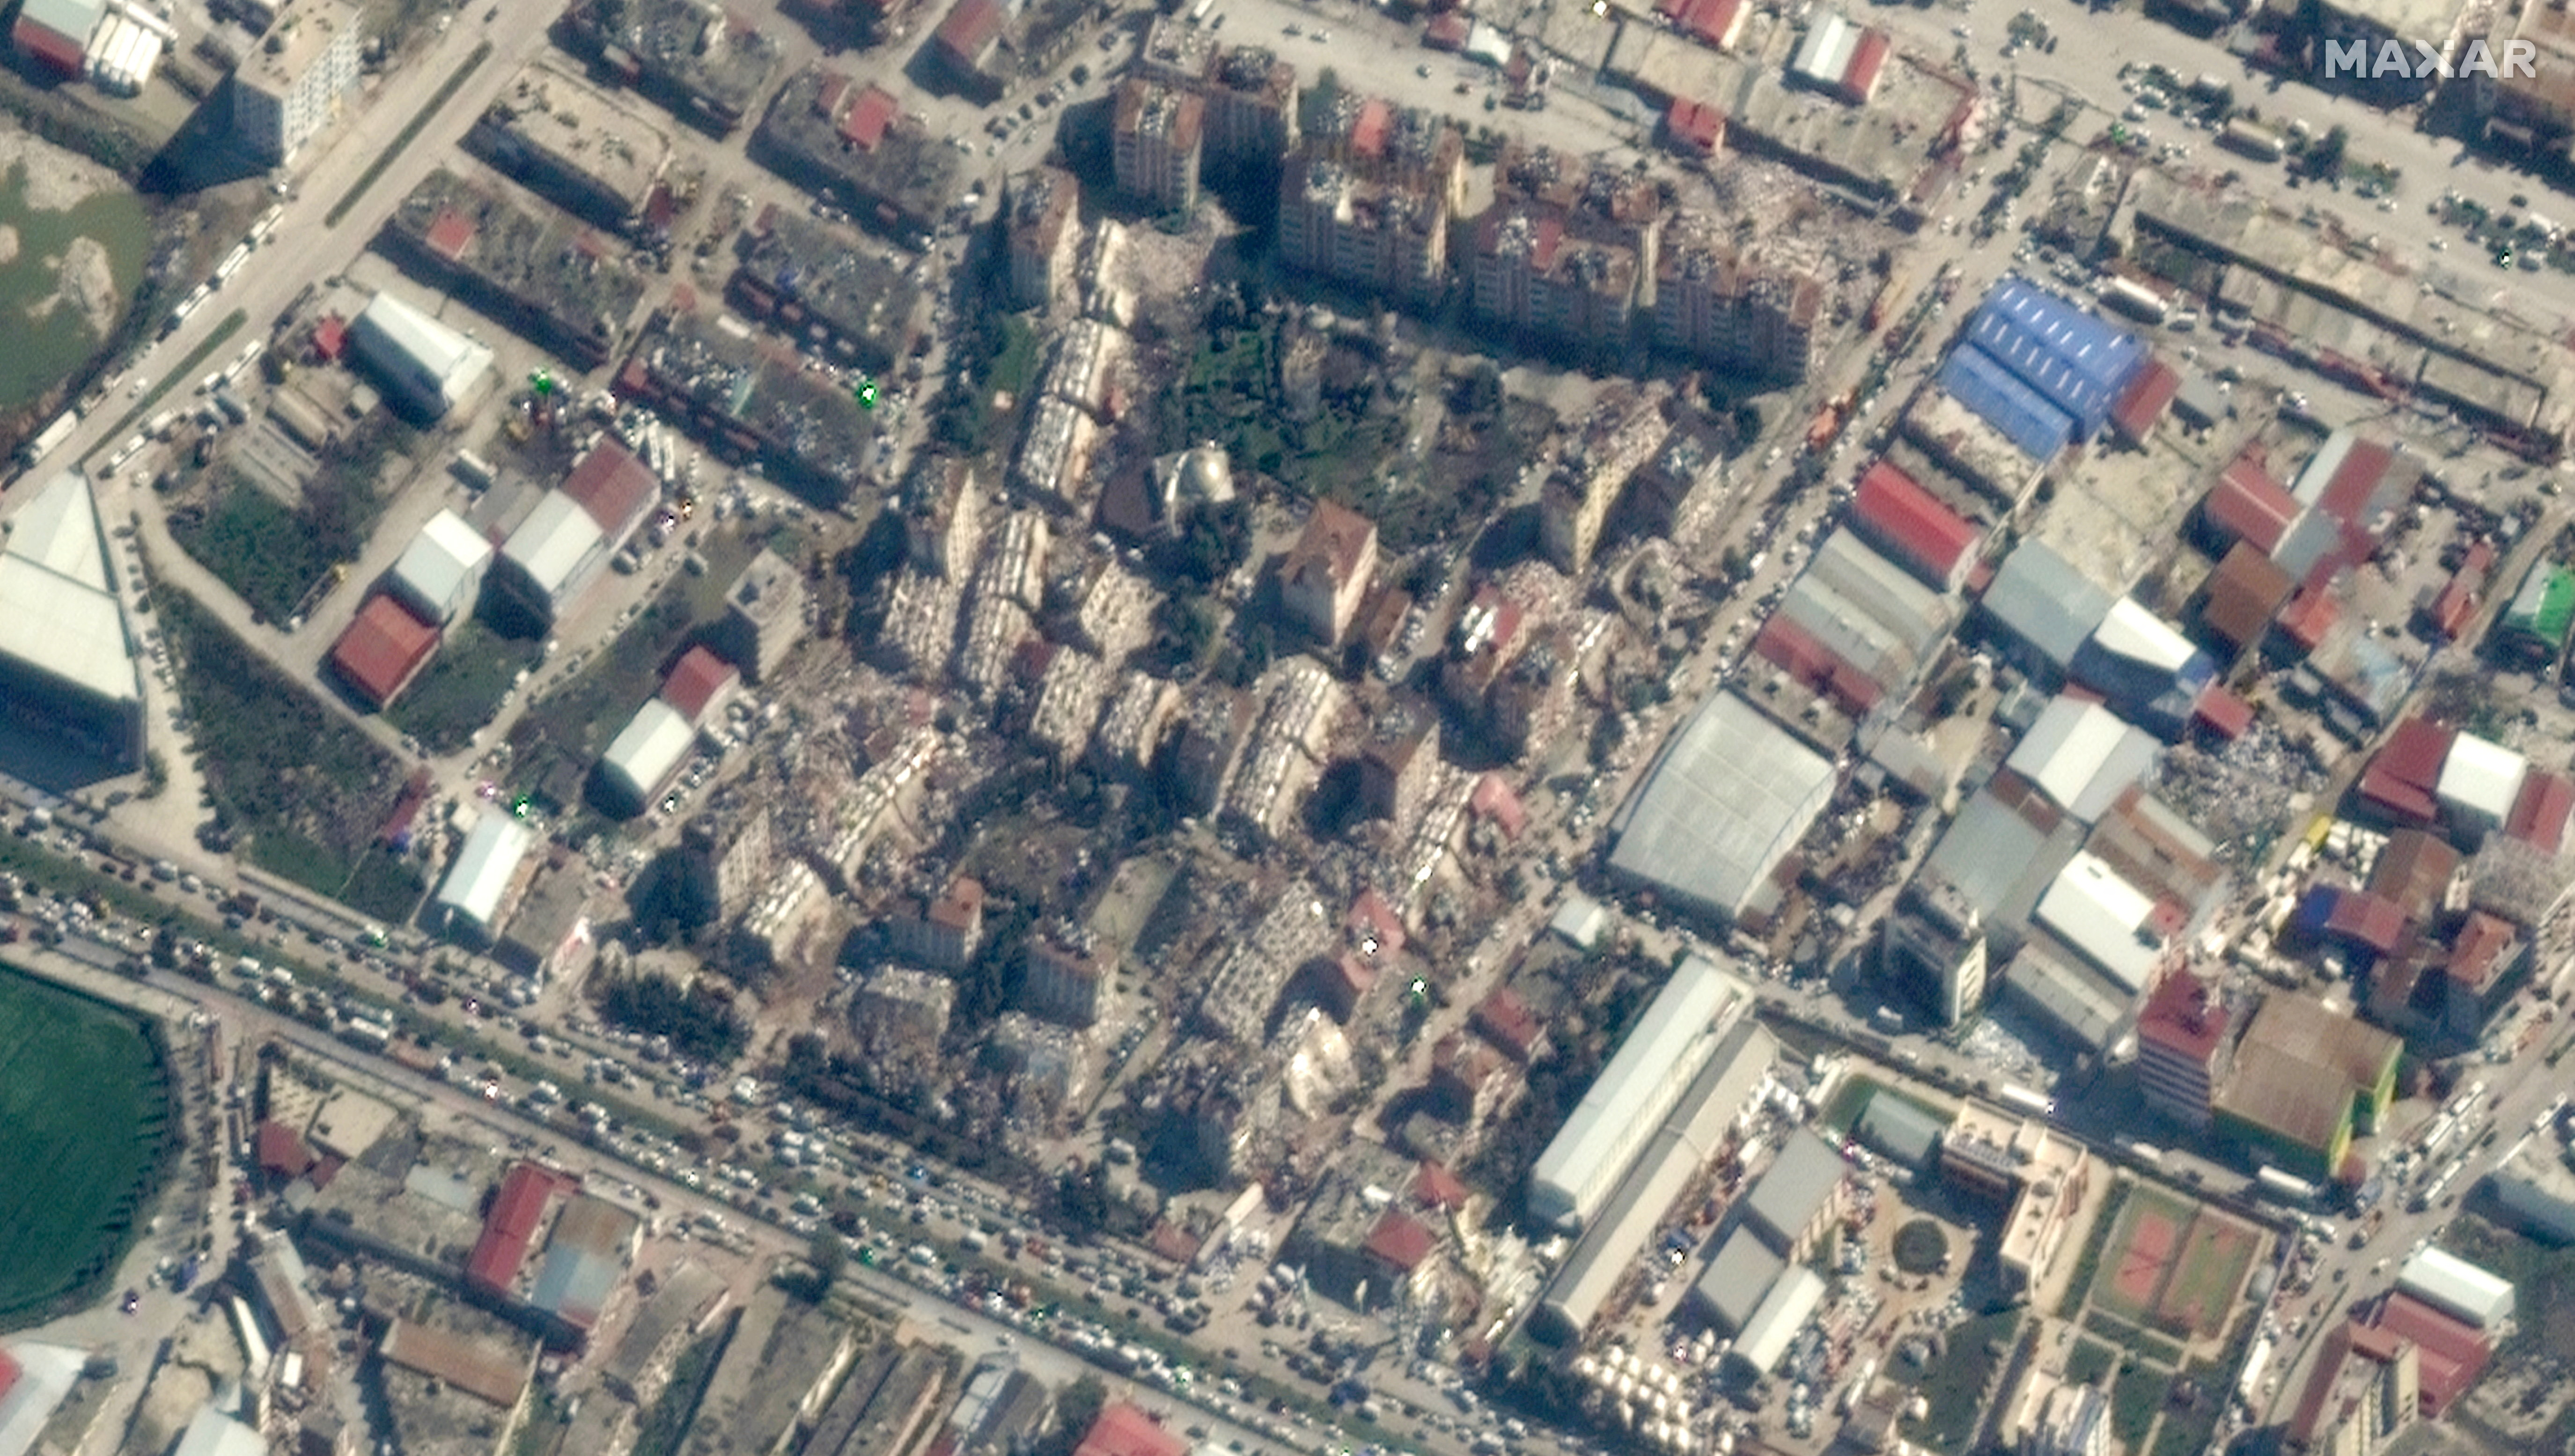 Después del terremoto miles de edificios quedaron derrumbados en varias ciudades, incluyendo Antakya. Imagen satelital ?2023 Maxar Technologies/Folleto a través de REUTERS